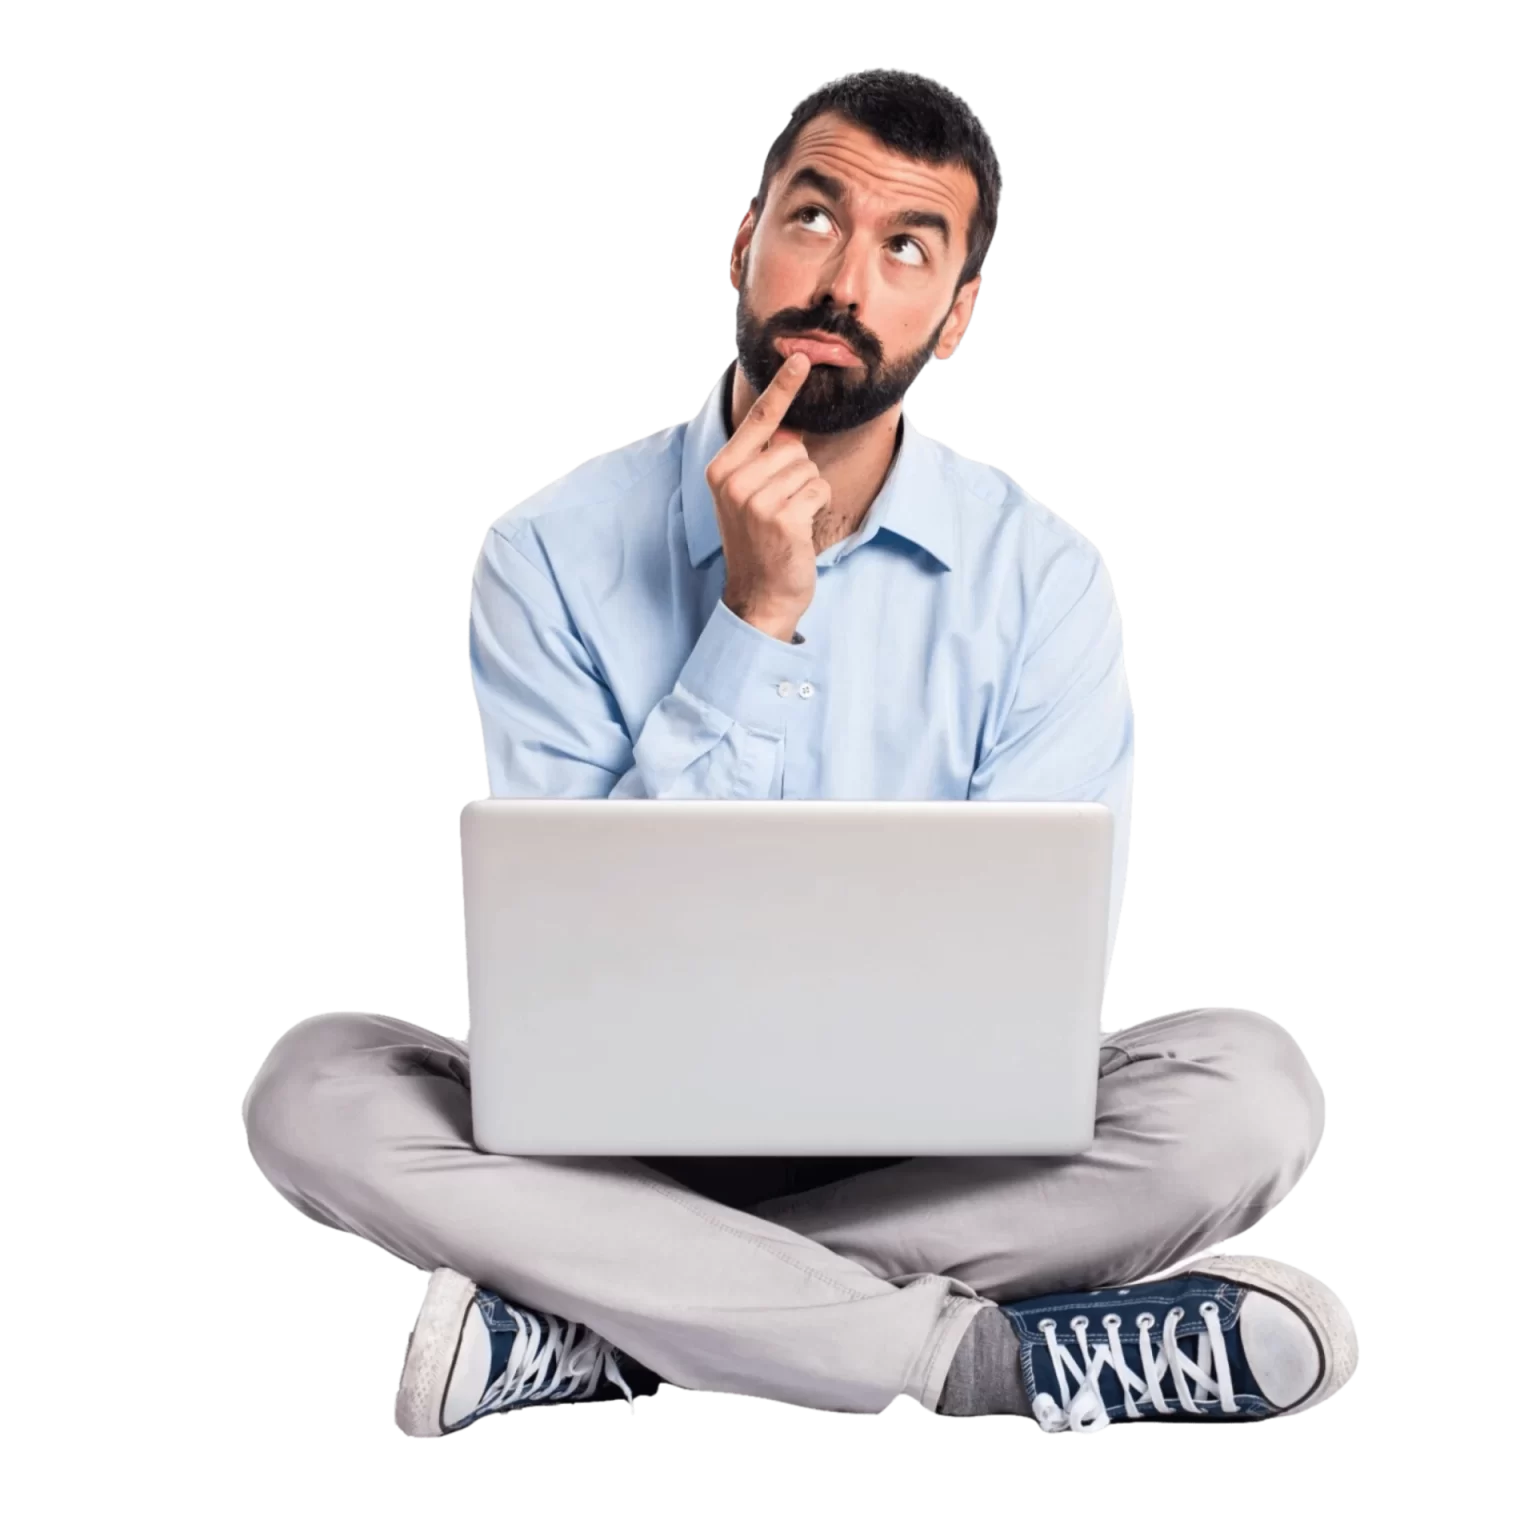 un homme pensif en chemise bleu, pantalon gris, converse bleu, assis en tailleur avec un ordinateur portable sur les genoux. Il est pensif et se questionne.